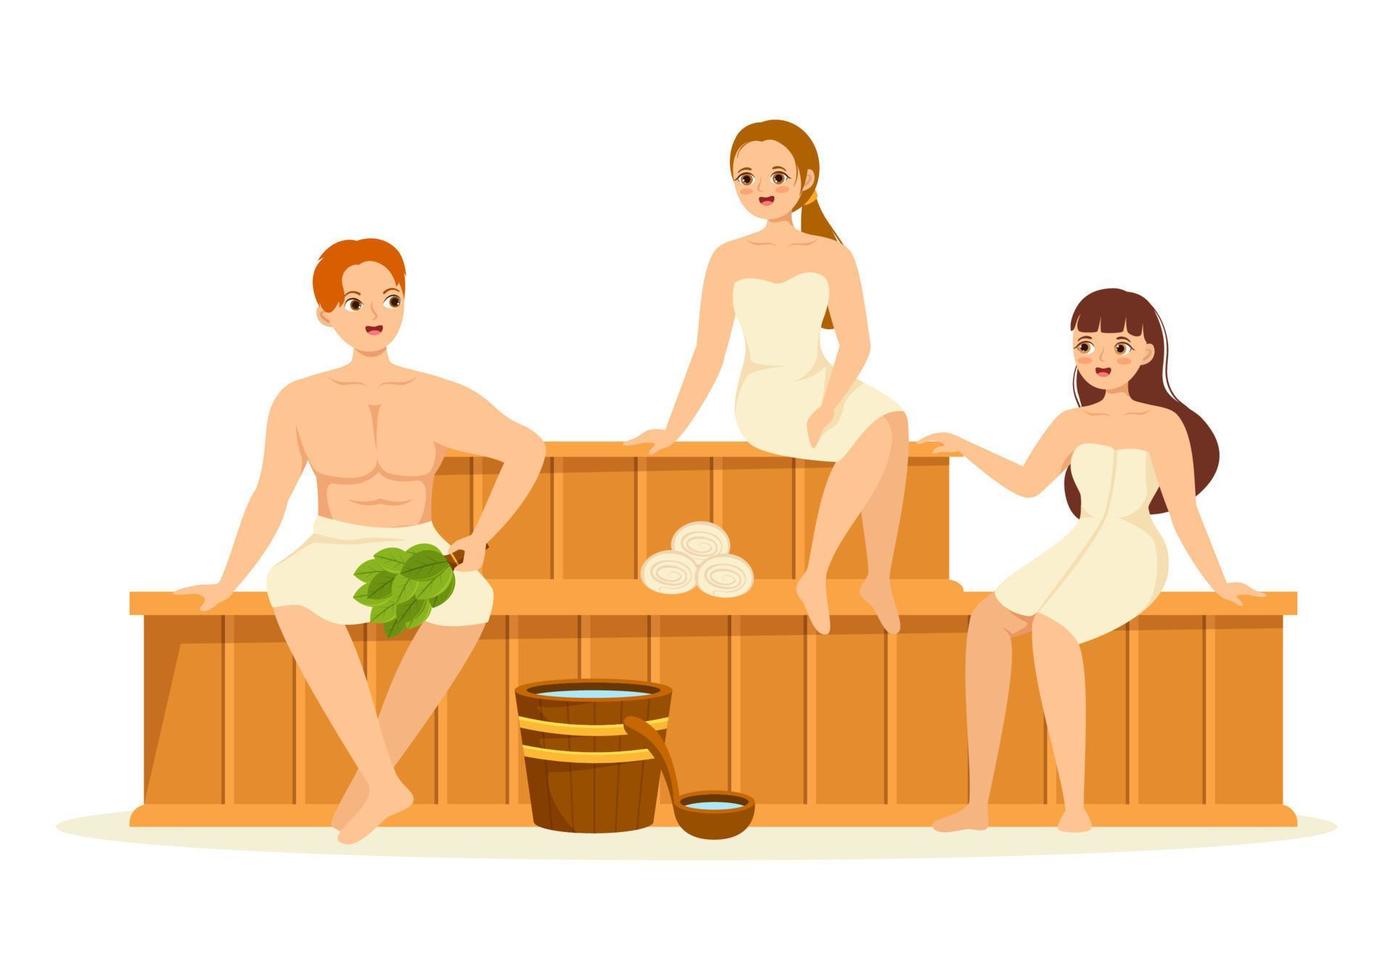 sauna und dampfbad mit menschen entspannen sich, waschen ihre körper, dämpfen oder genießen zeit in flachen handgezeichneten karikaturvorlagen vektor